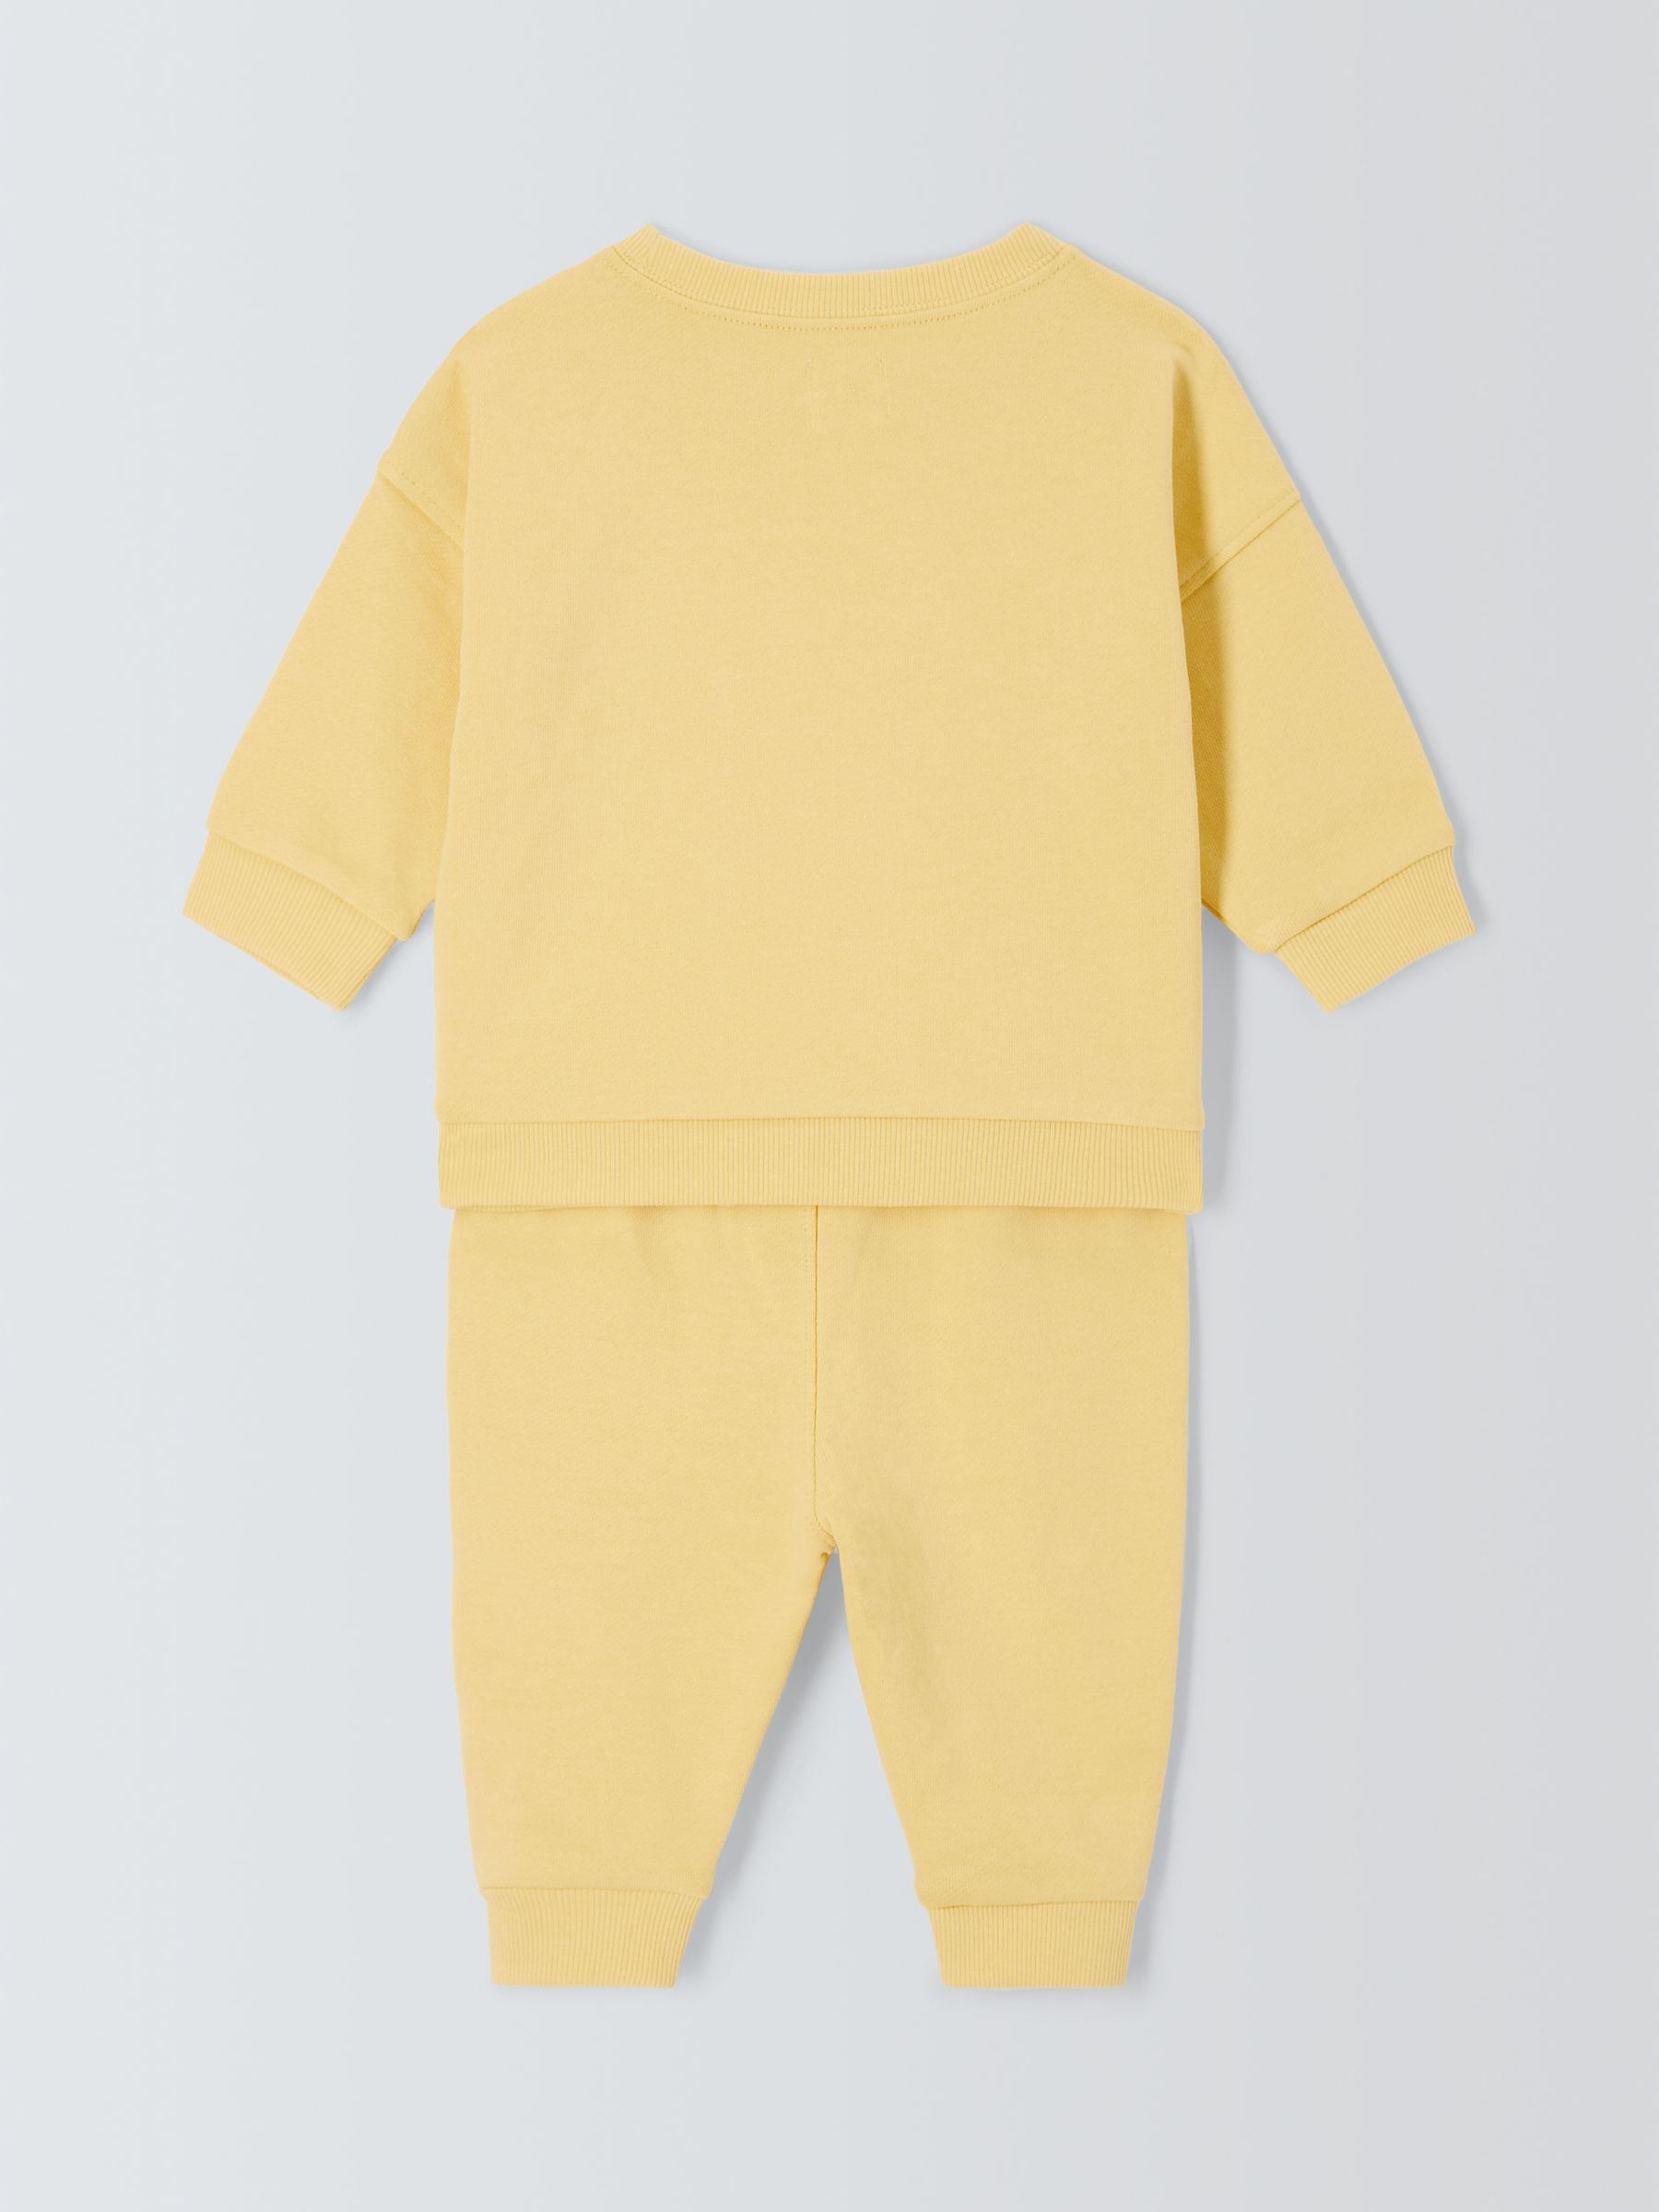 John Lewis ANYDAY Baby Smile Motif Sweatshirt & Jogger Set, Yellow, 6-9 months